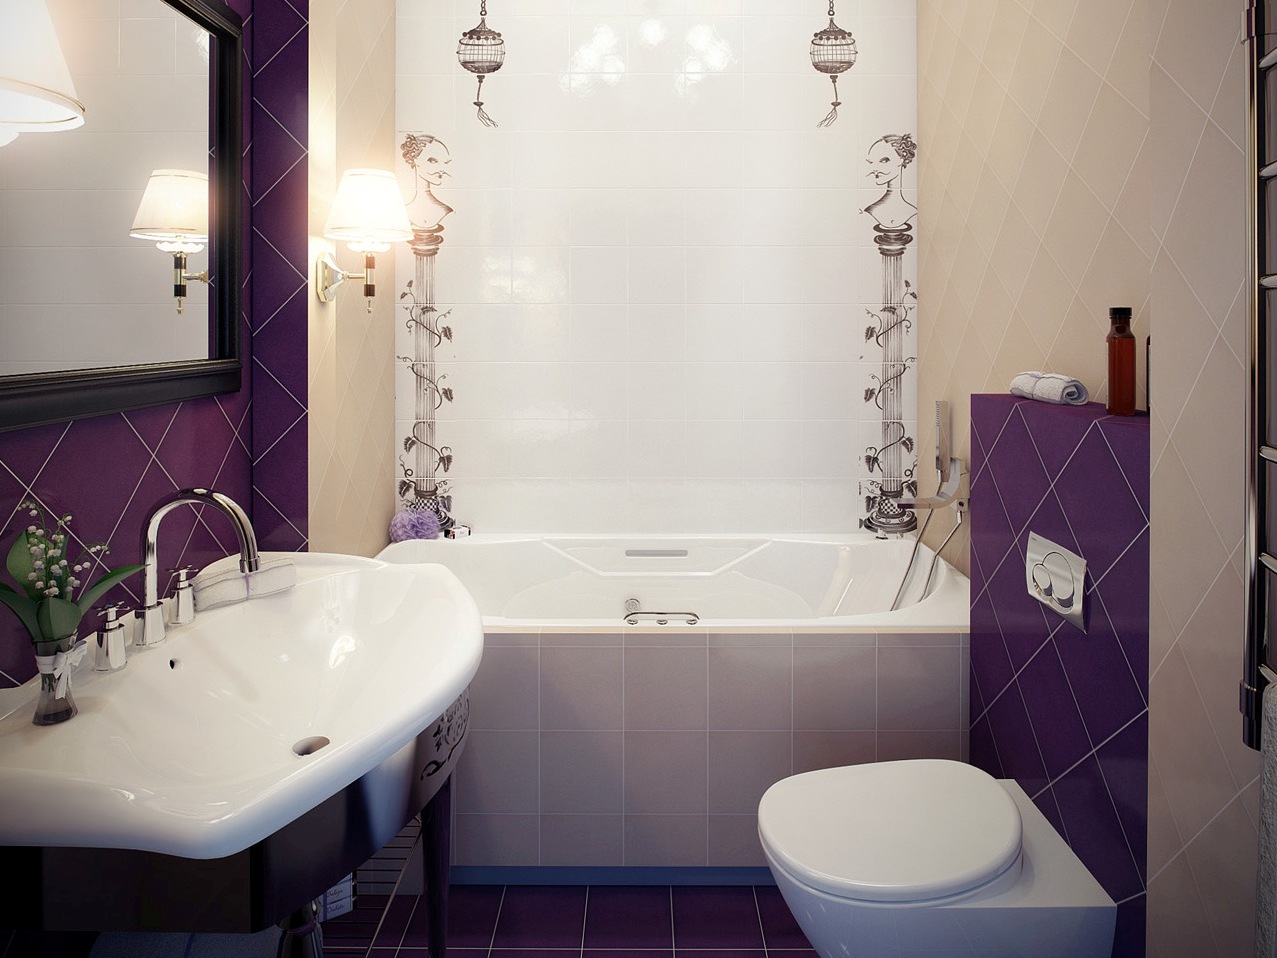 Как обустроить небольшую ванную комнату дешево и с комфортом? (42 фото) | дизайн и интерьер ванной комнаты